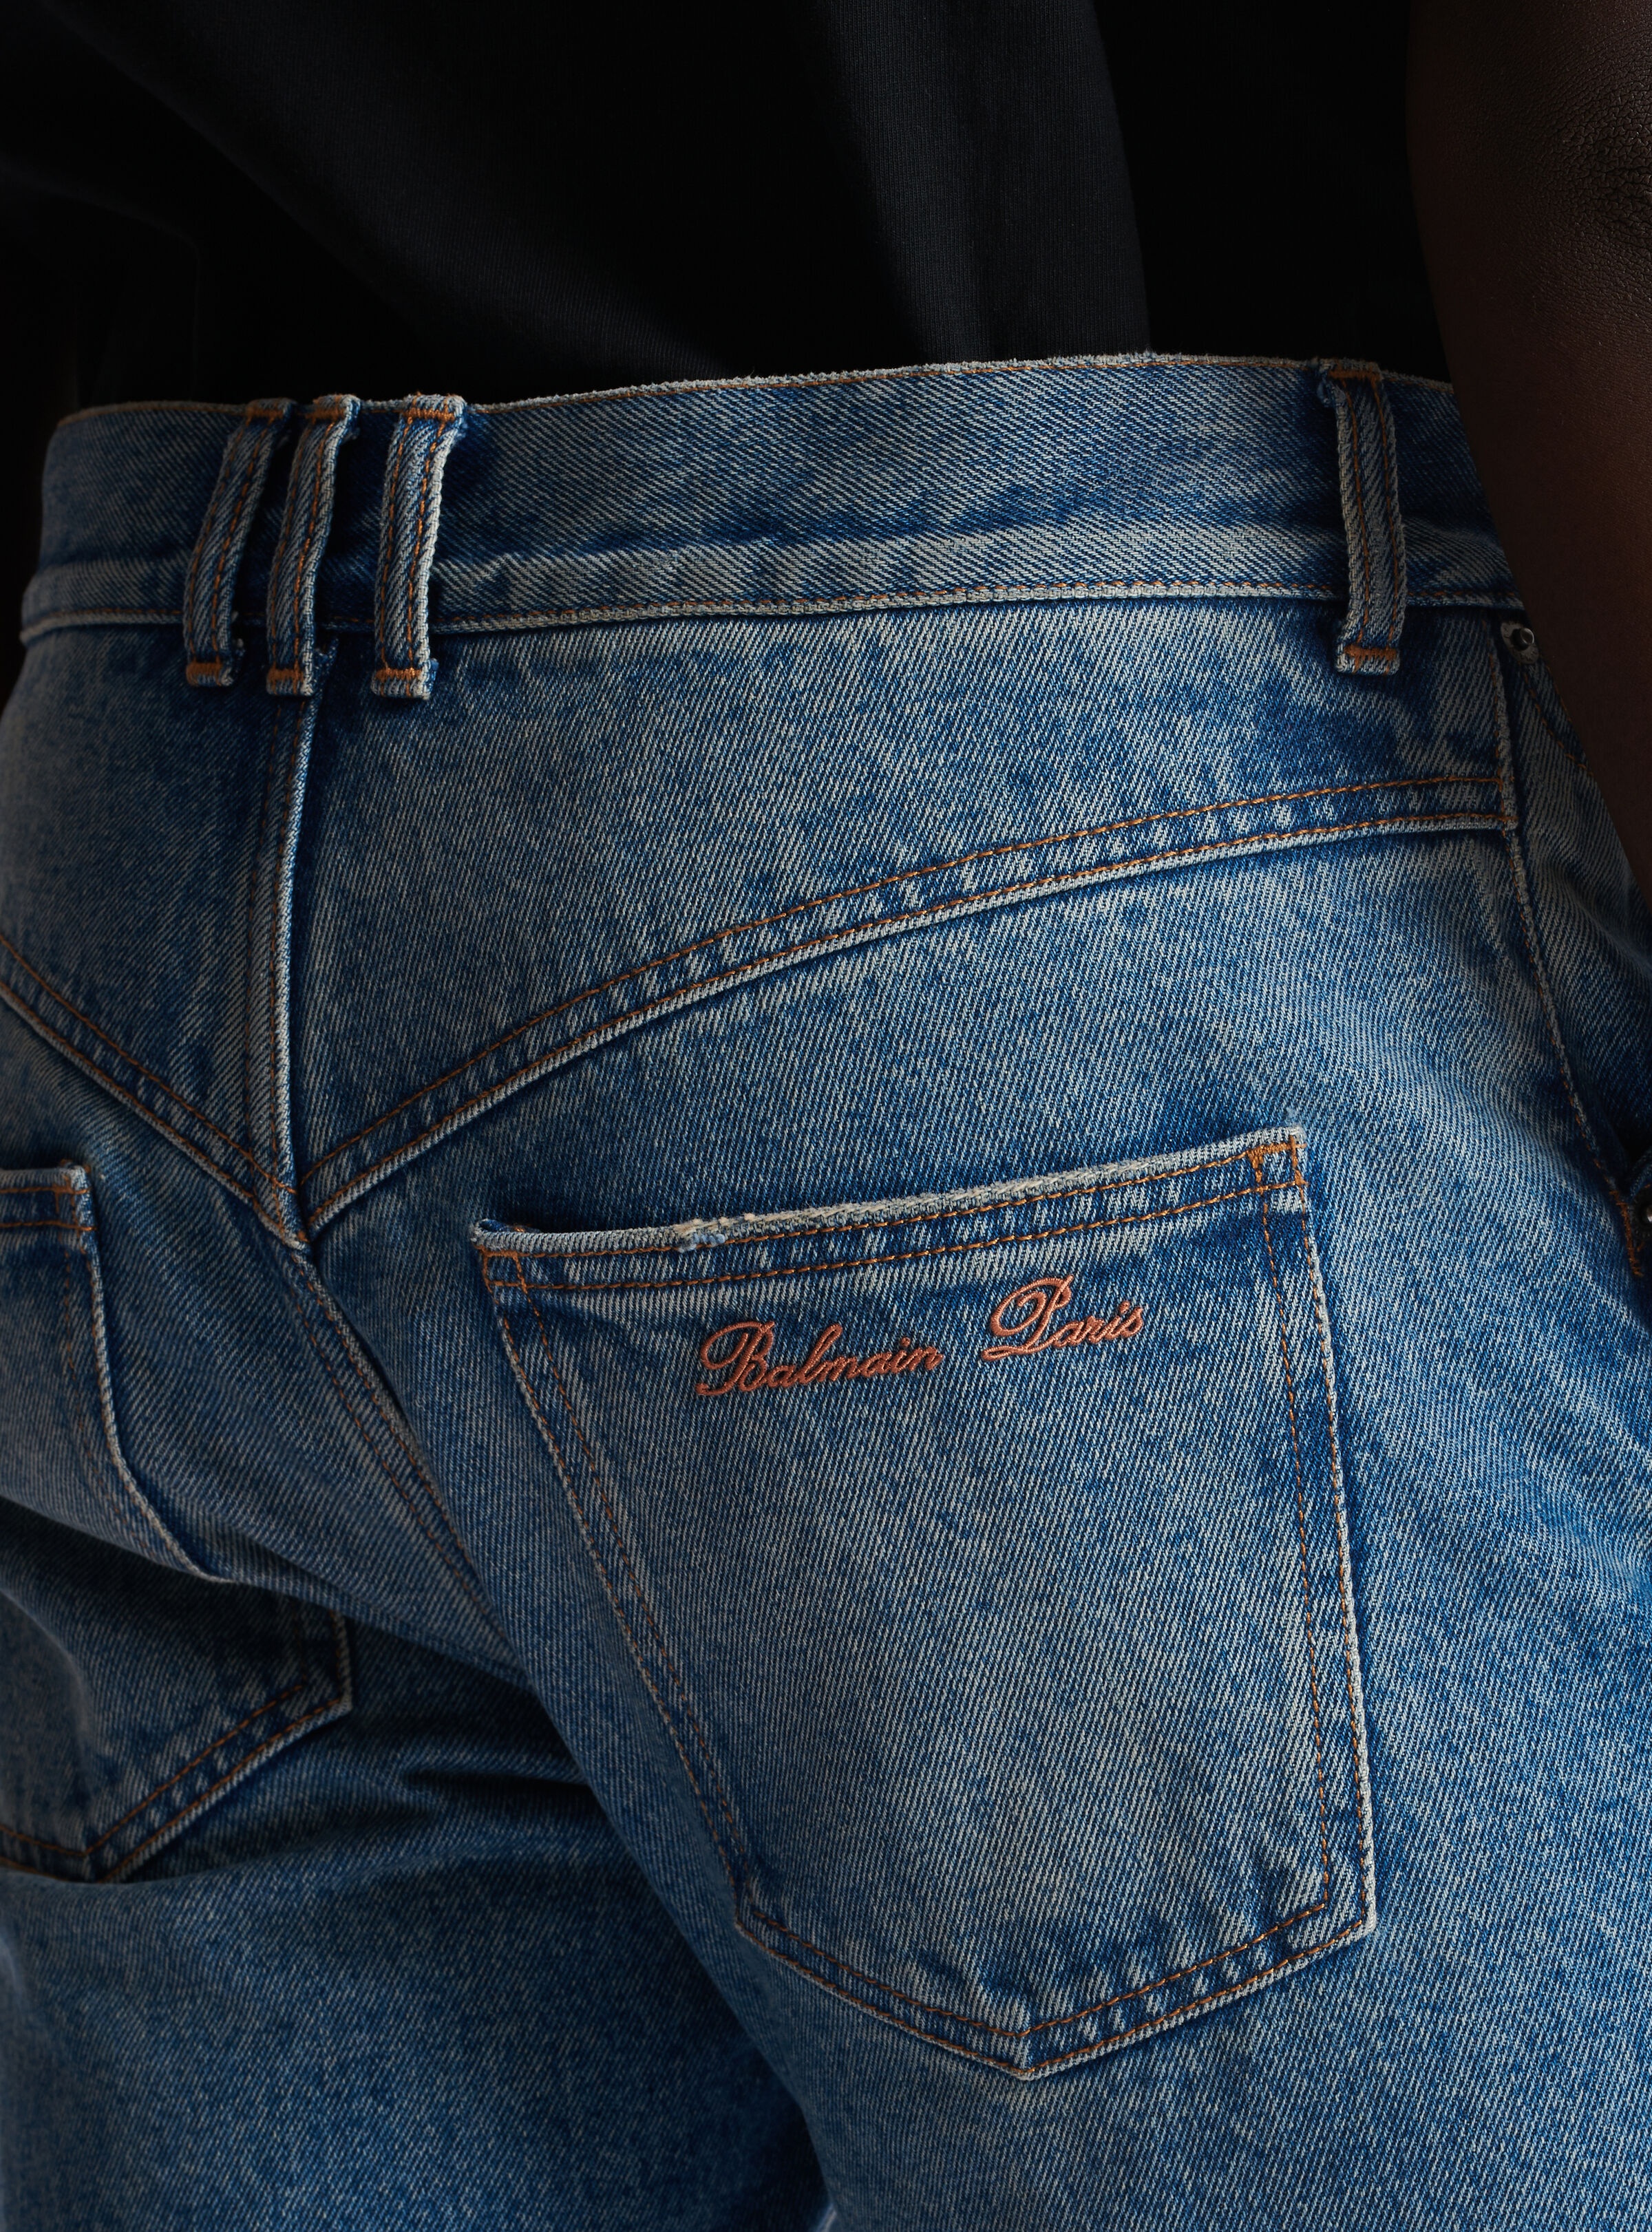 Blue Wash vintage denim jeans - 7